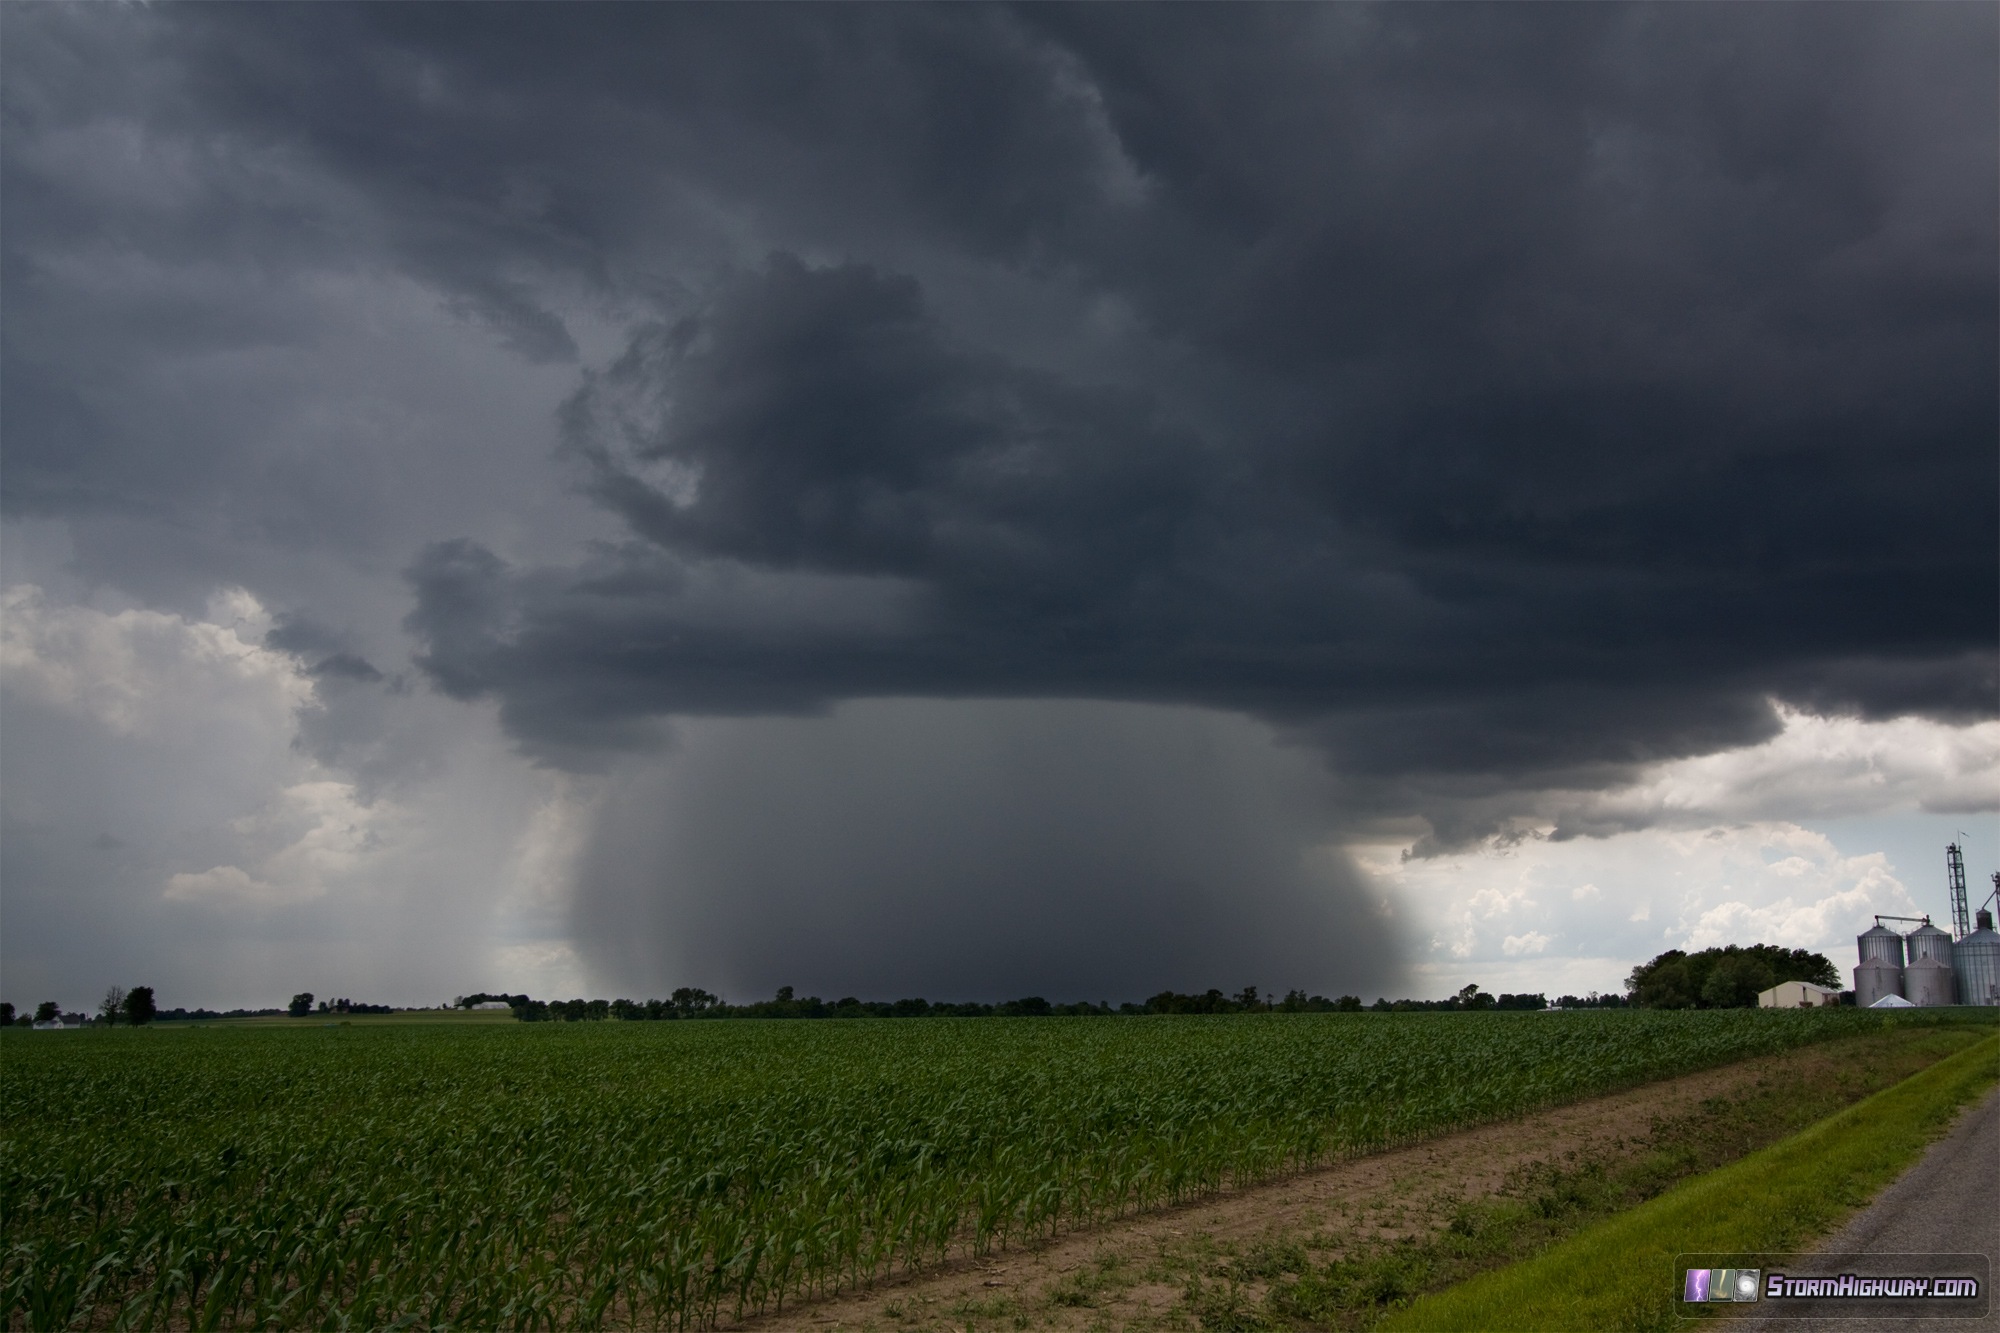 Heavy thunderstorm rain core near Trenton, Illinois - June 1, 2014